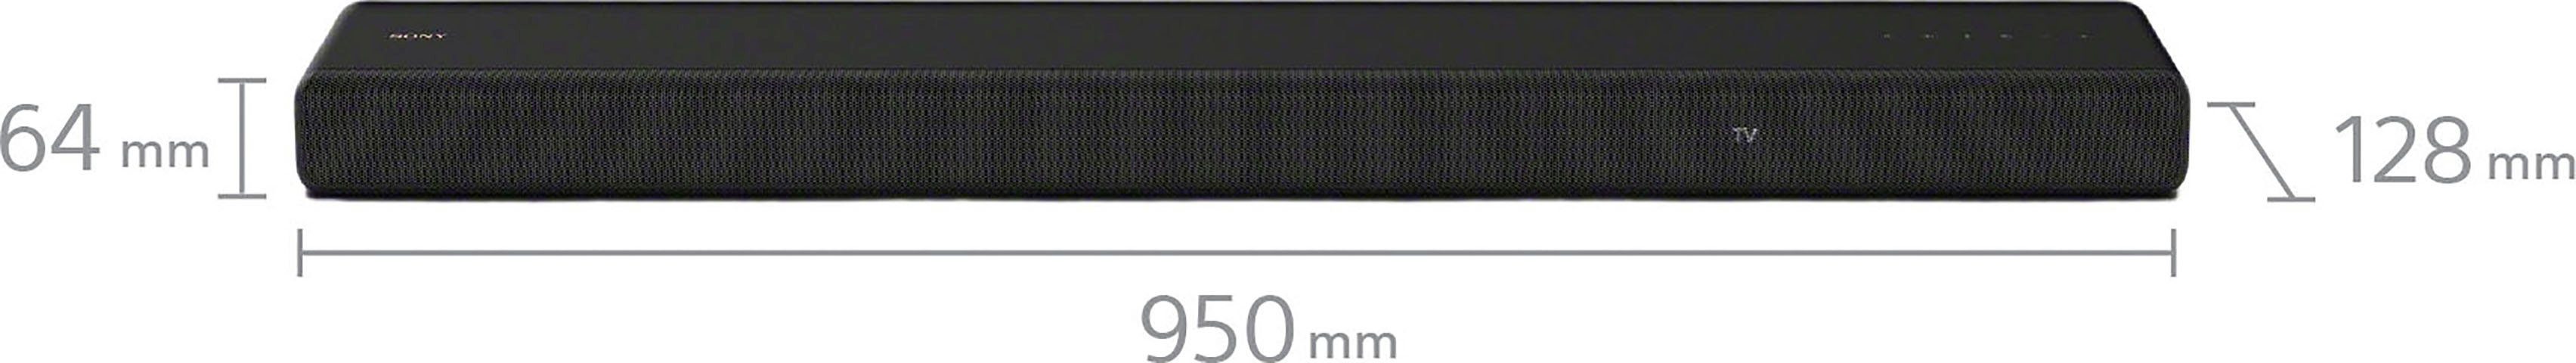 Sony HT-A3000 3.1-Kanal Soundbar 3.1 speziellem AVRCP WLAN Bluetooth, Soundbar Front-Lautsprecher Mittellautsprecher) X-Balanced Bluetooth, 250 3 W, inkl. Bluetooth, (WiFi), (A2DP